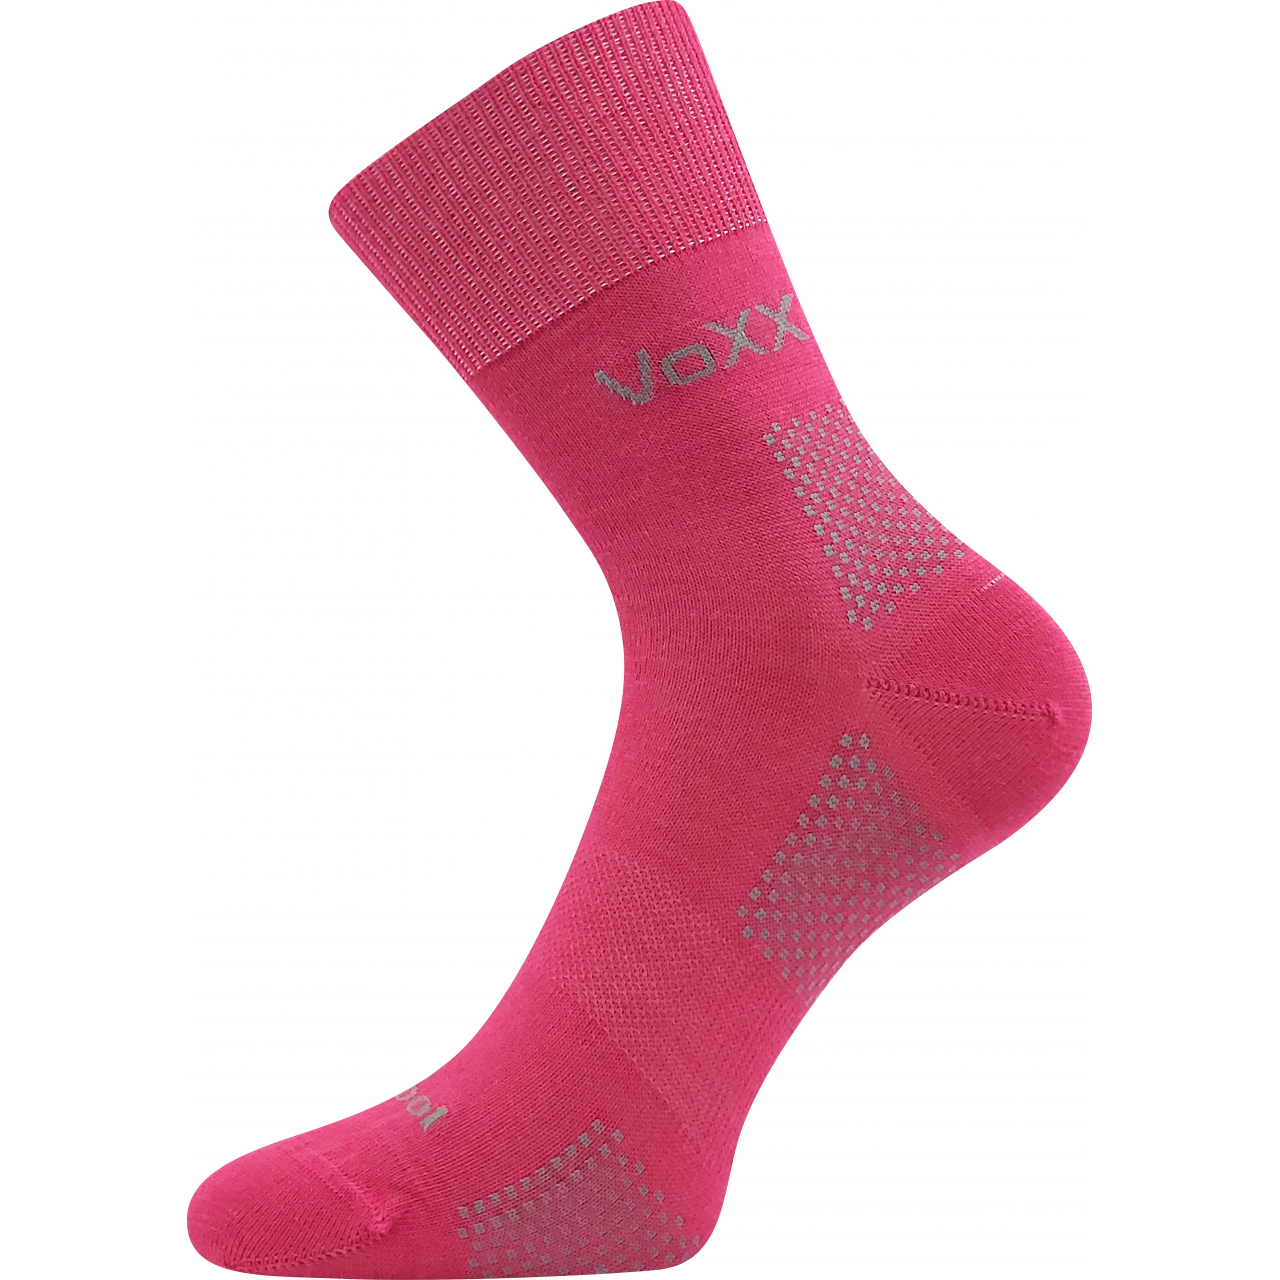 Ponožky unisex funkční VoXX Orionis ThermoCool - tmavě růžové, 35-38